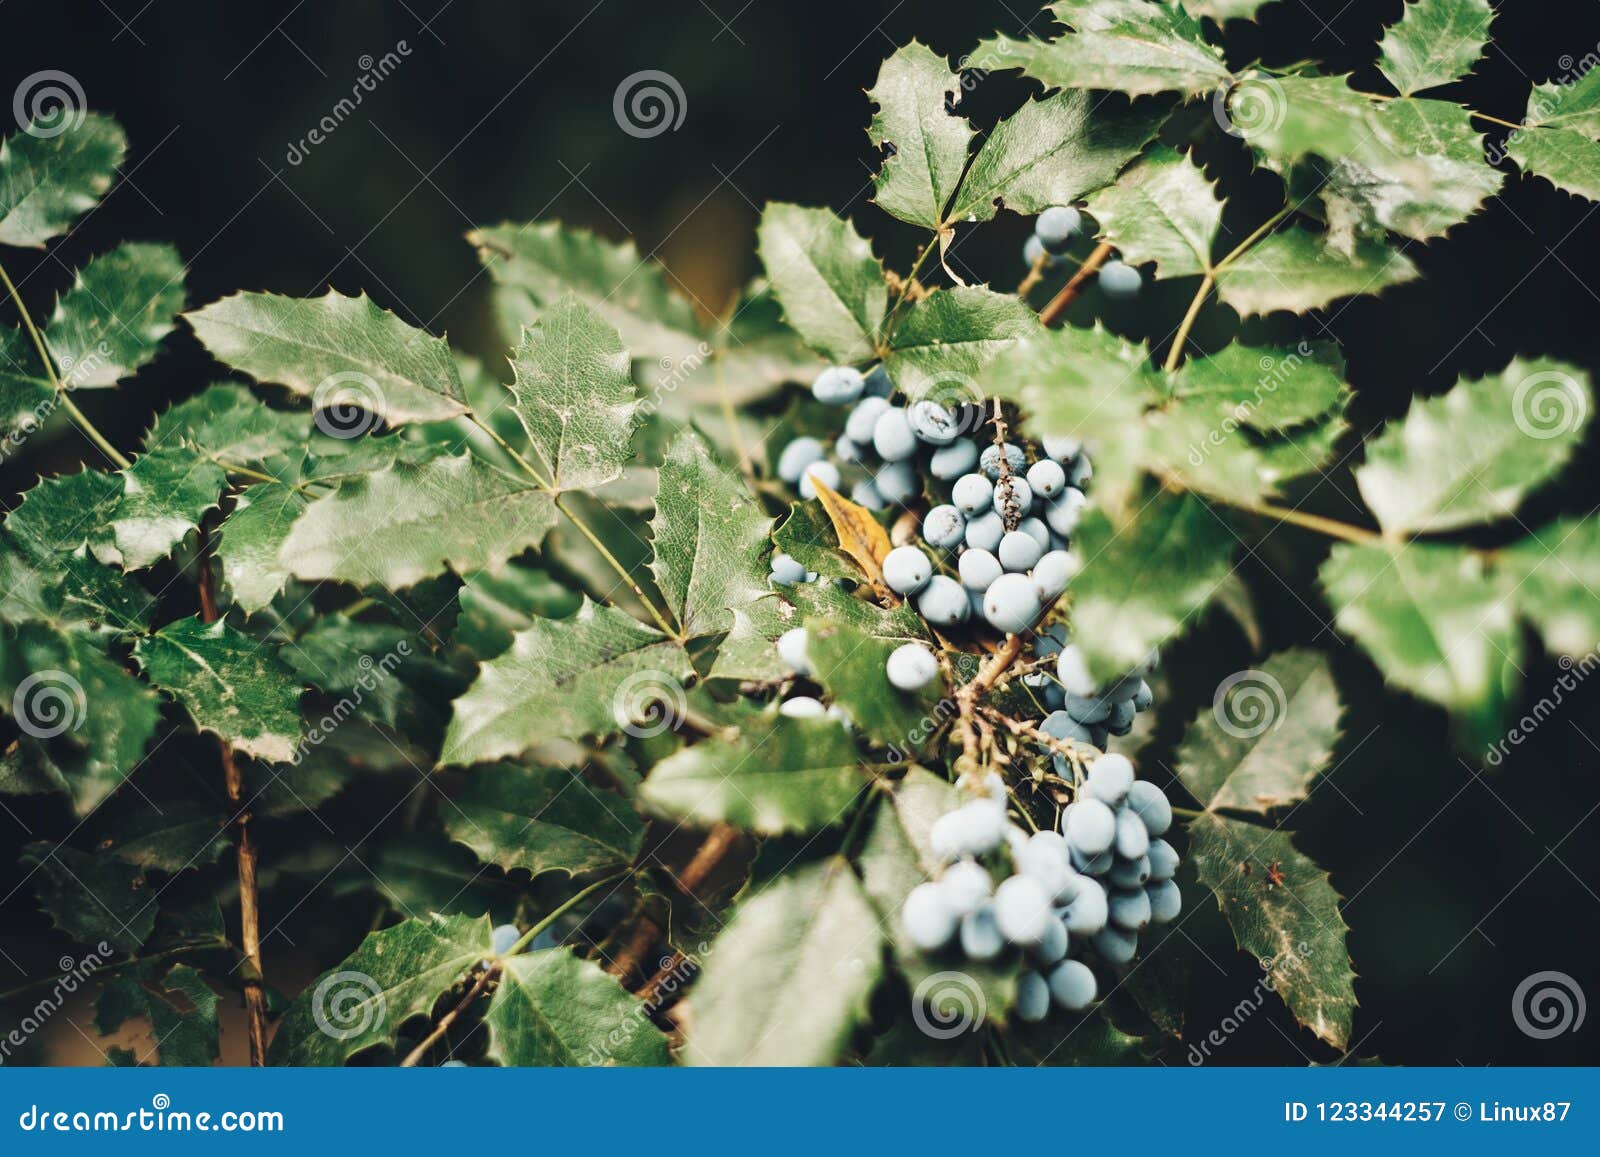 俄勒冈葡萄 库存图片. 图片 包括有 果子, 甜甜, 绿色, 一堆, 蓝色, 纤维, 通配, 新鲜, 事假 - 120004263